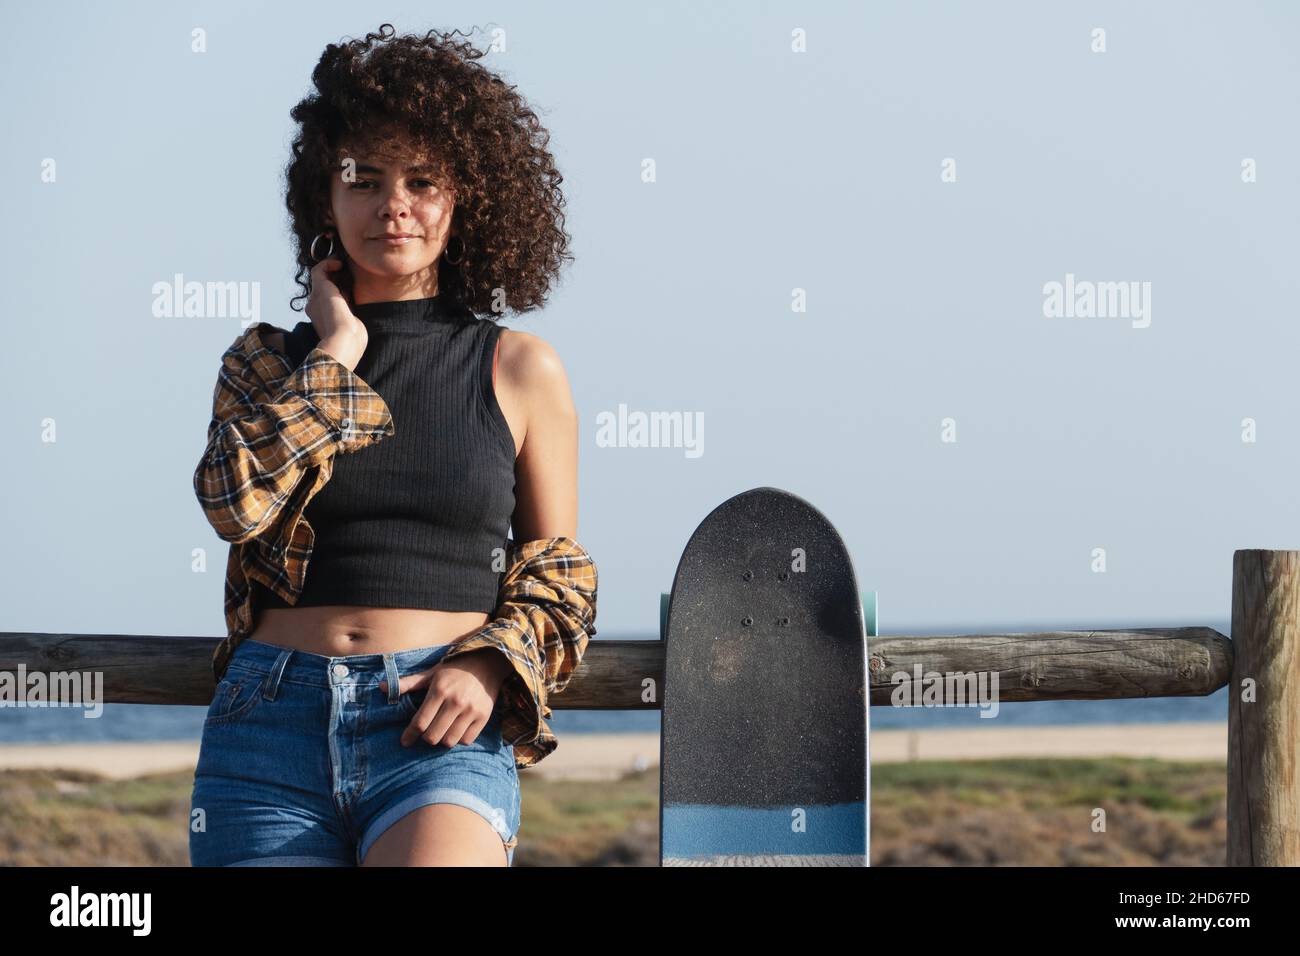 Hübsche junge Skaterin Frau mit Afro-Haar-Porträt. Sie ist im Freien, lehnt sich an einen Zaun und schaut auf die Kamera Stockfoto